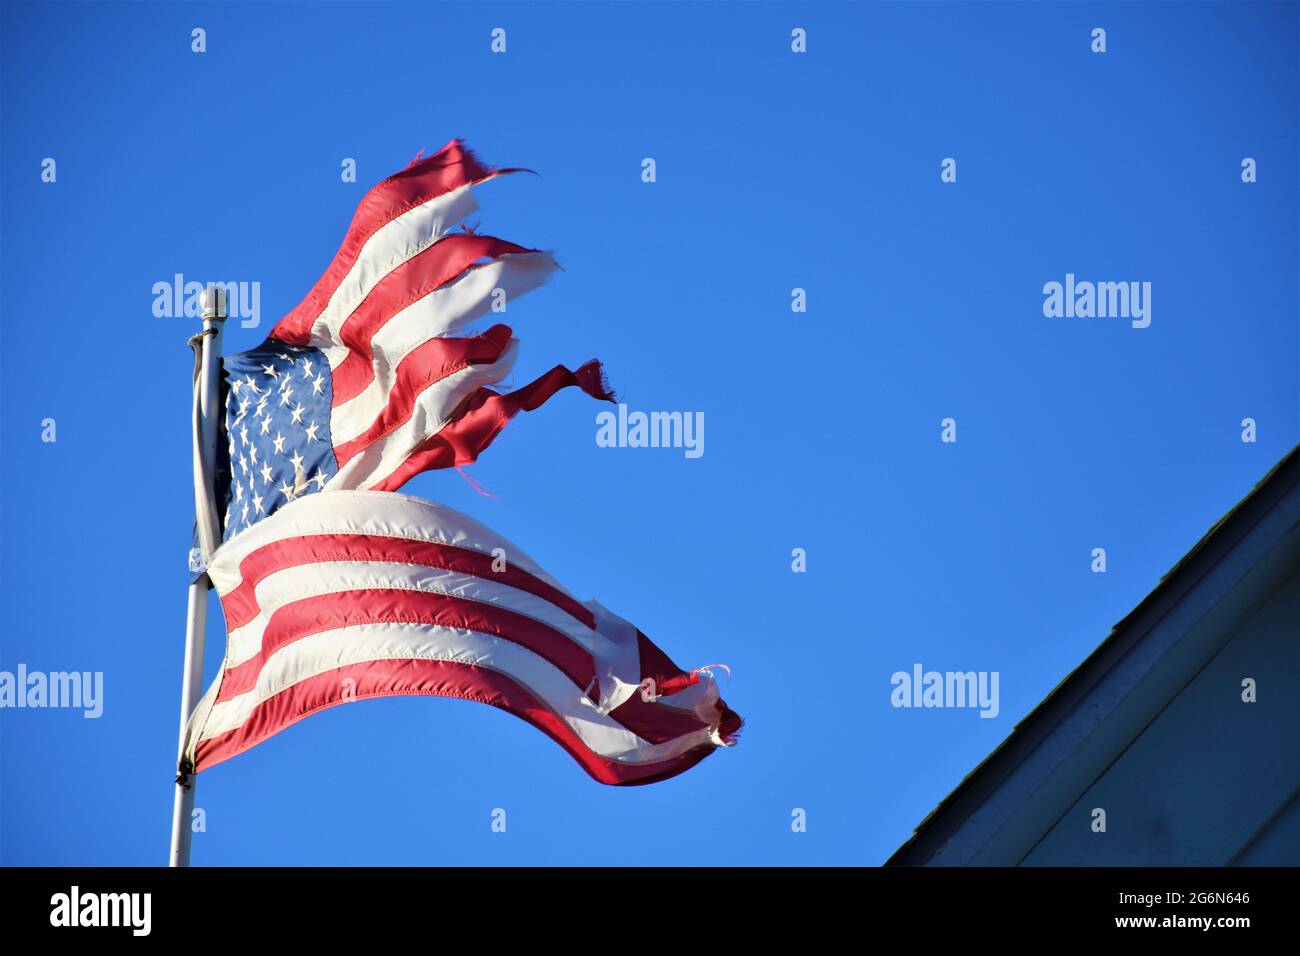 Der Wind hat diese amerikanische Flagge zerstört und muss wegen der Schäden durch Wind in Zentralkalifornien in einem Privathaus auf dem Bauernhof ersetzt werden Stockfoto